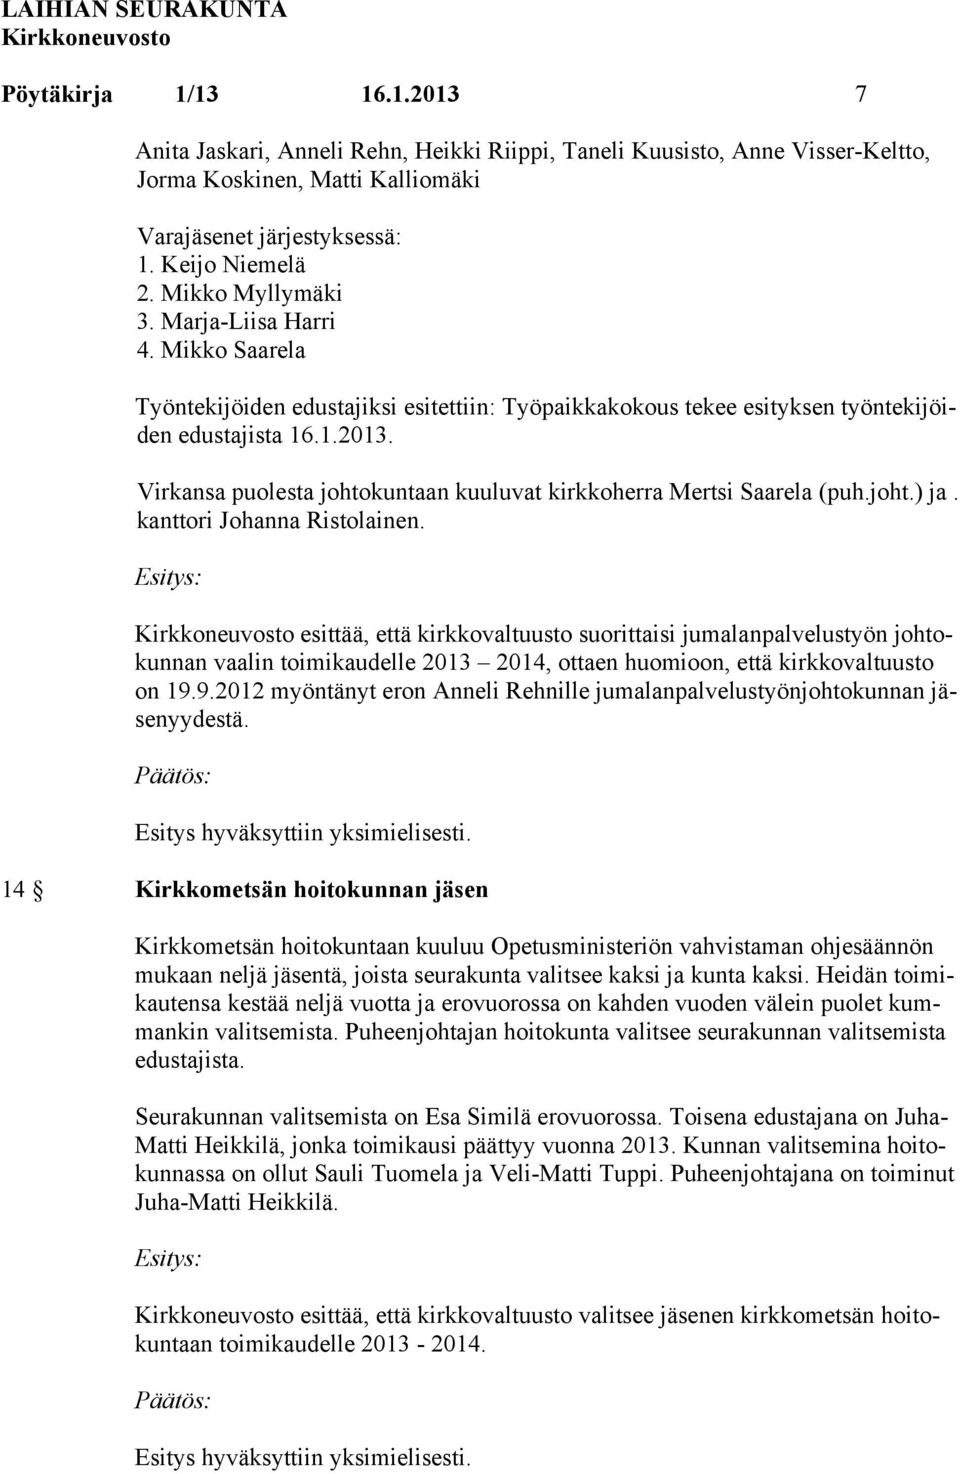 Virkansa puolesta johtokuntaan kuuluvat kirkkoherra Mertsi Saarela (puh.joht.) ja. kanttori Johanna Ristolainen.